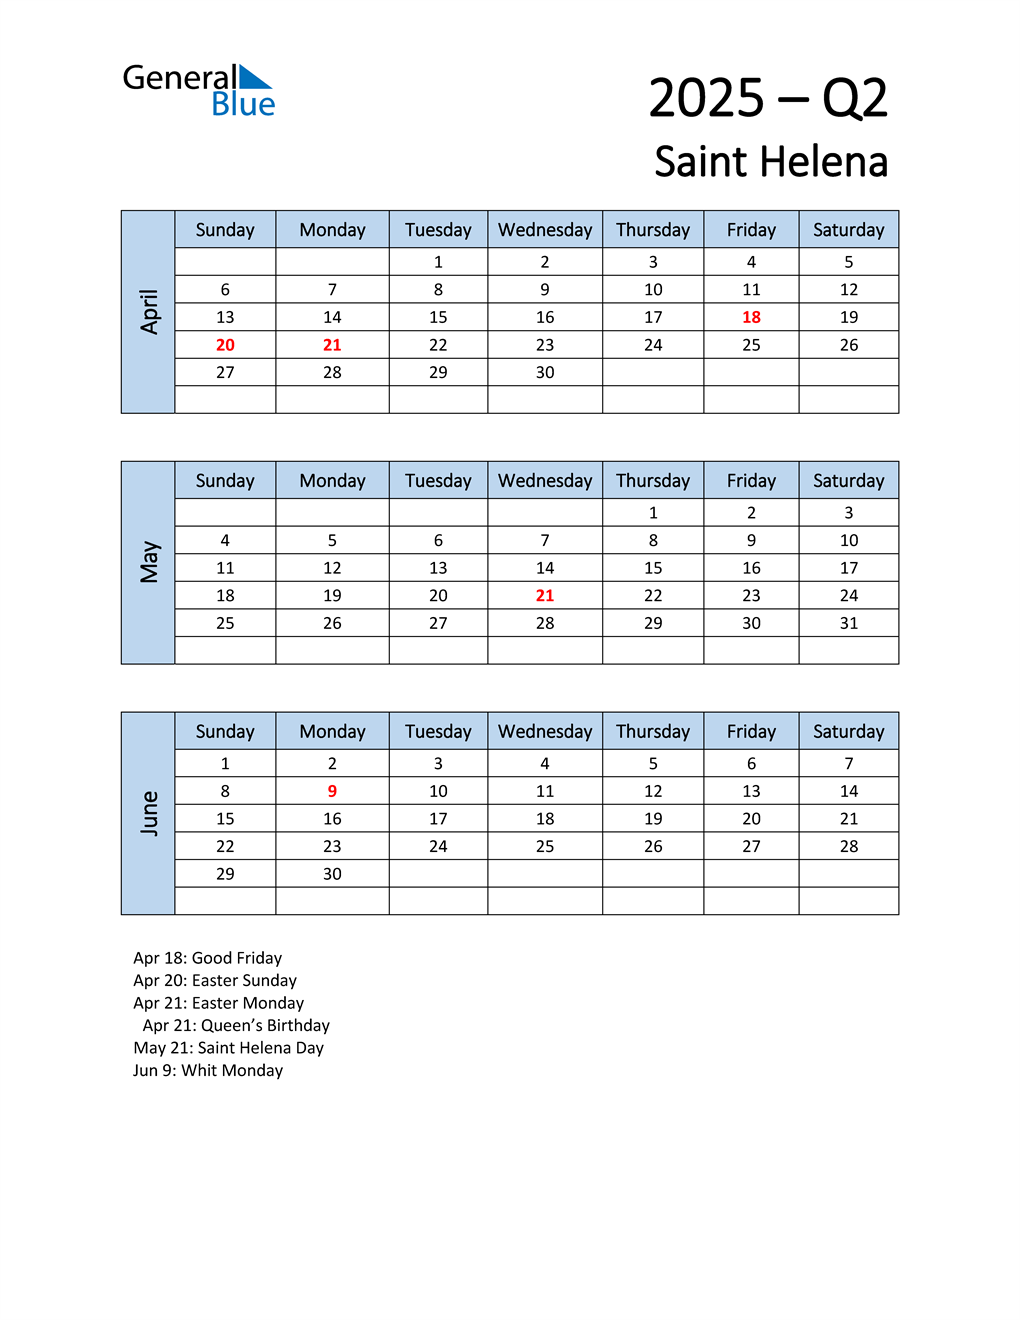 q2-2025-quarterly-calendar-with-saint-helena-holidays